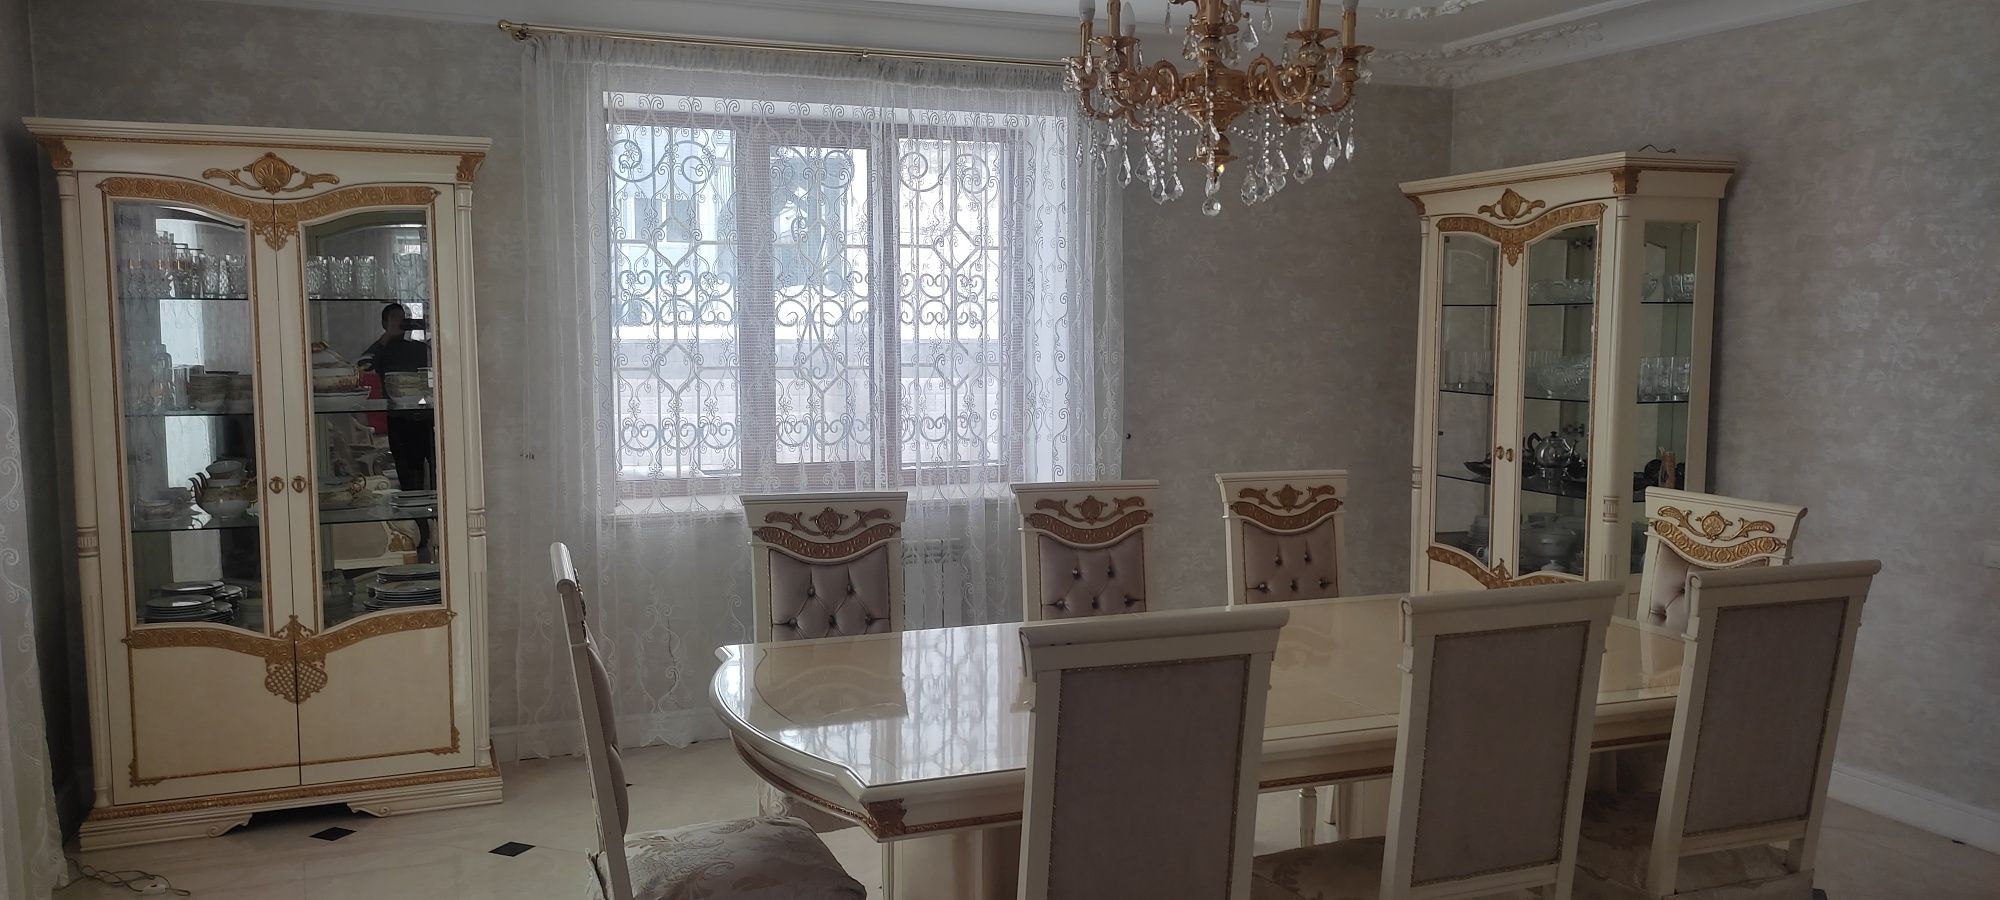 Корпусная мебель жилая комната производства Турция б/у цена договорная